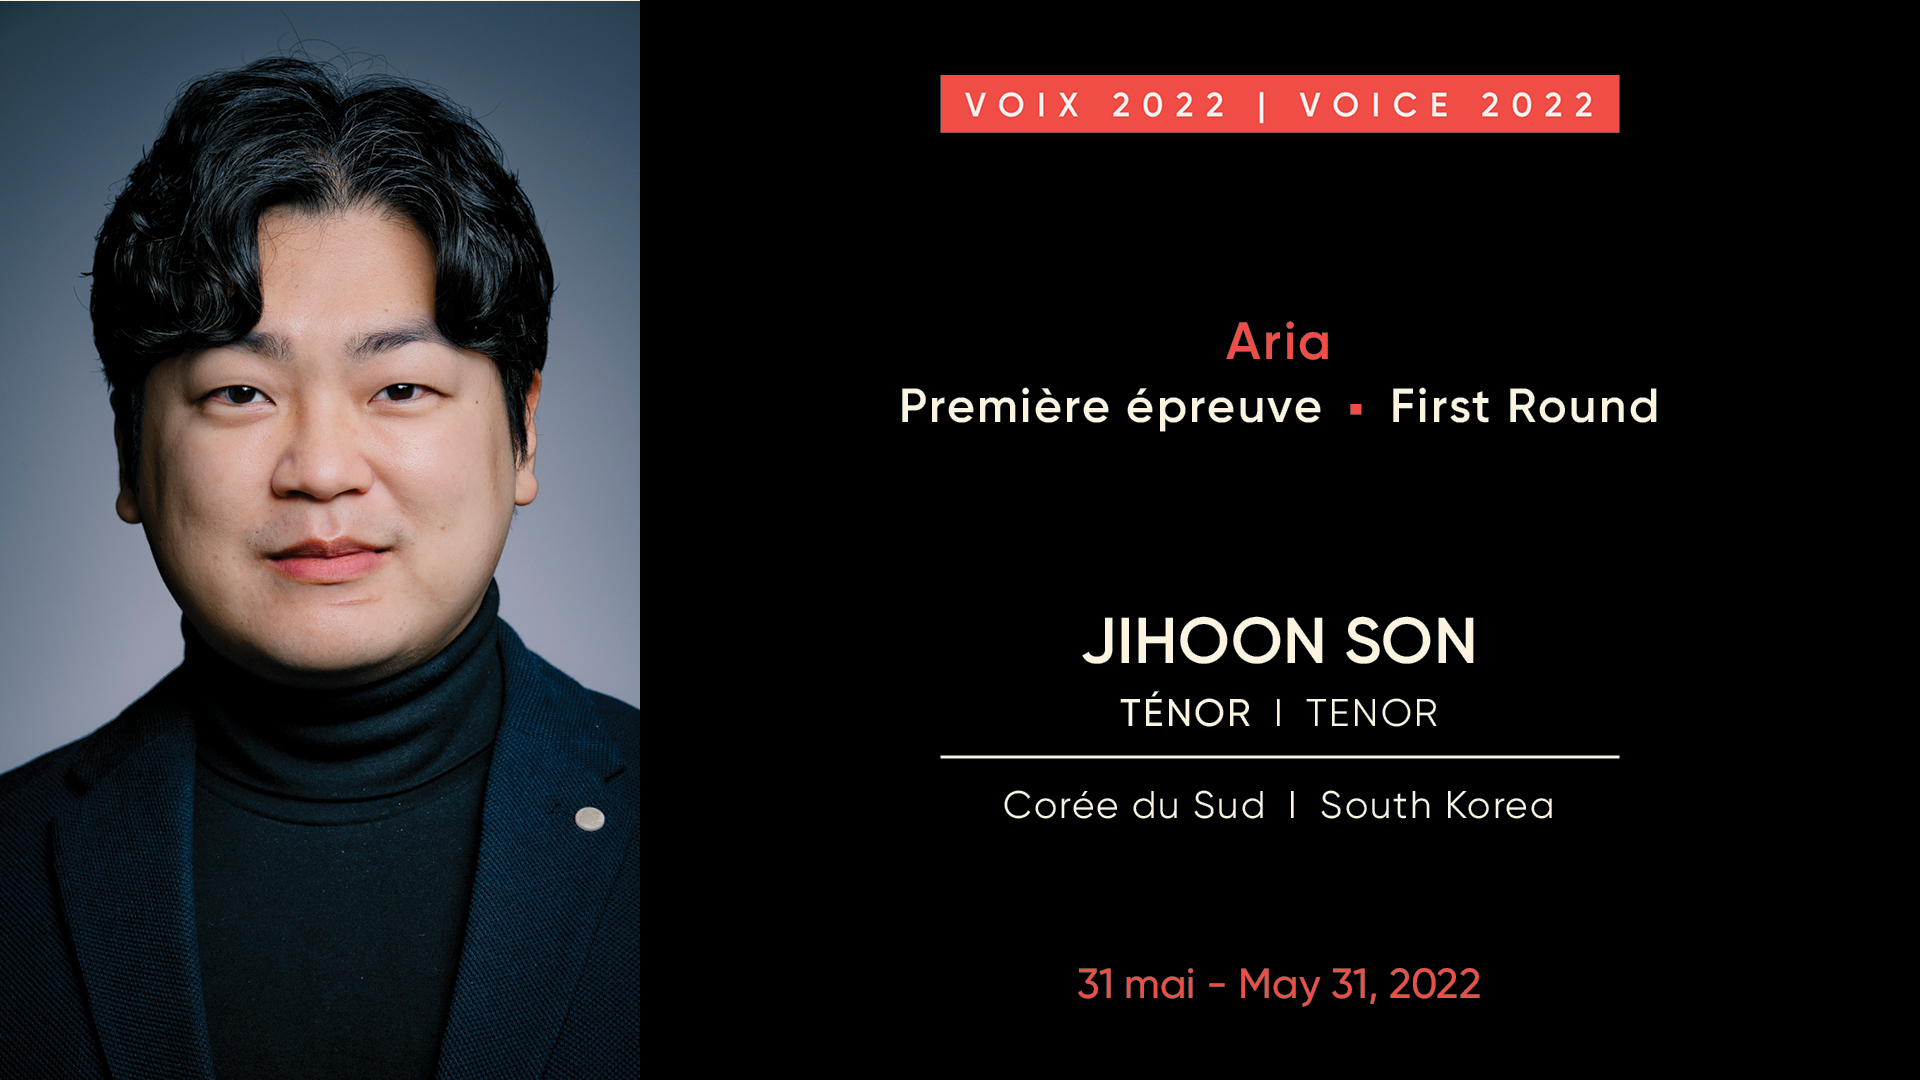 Jihoon Son